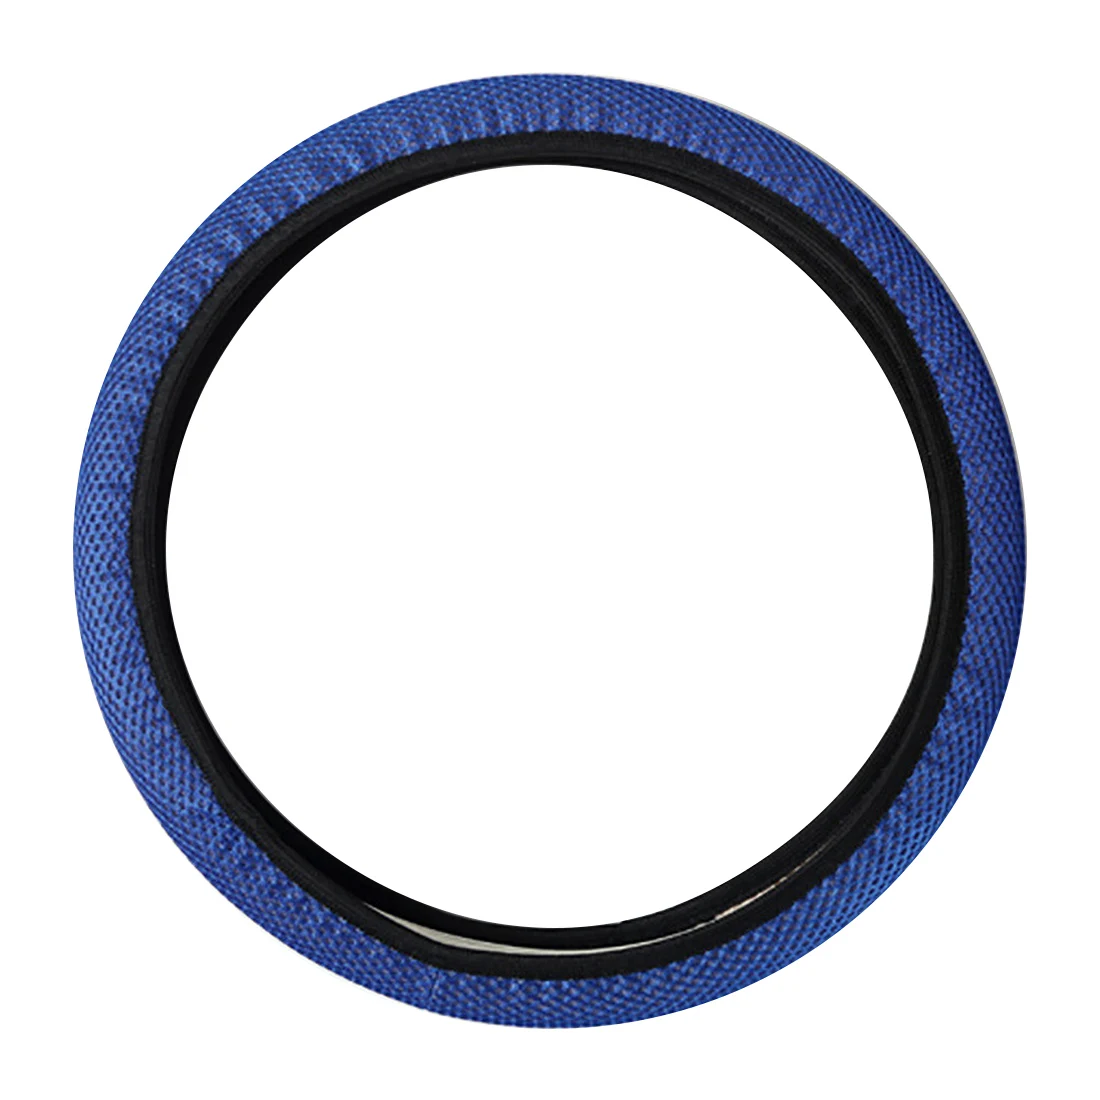 Dewtreetali универсальный чехол рулевого колеса автомобиля дышащий Сэндвич Ткань протектор рулевого колеса авто украшение автомобиля Стайлинг - Название цвета: Blue